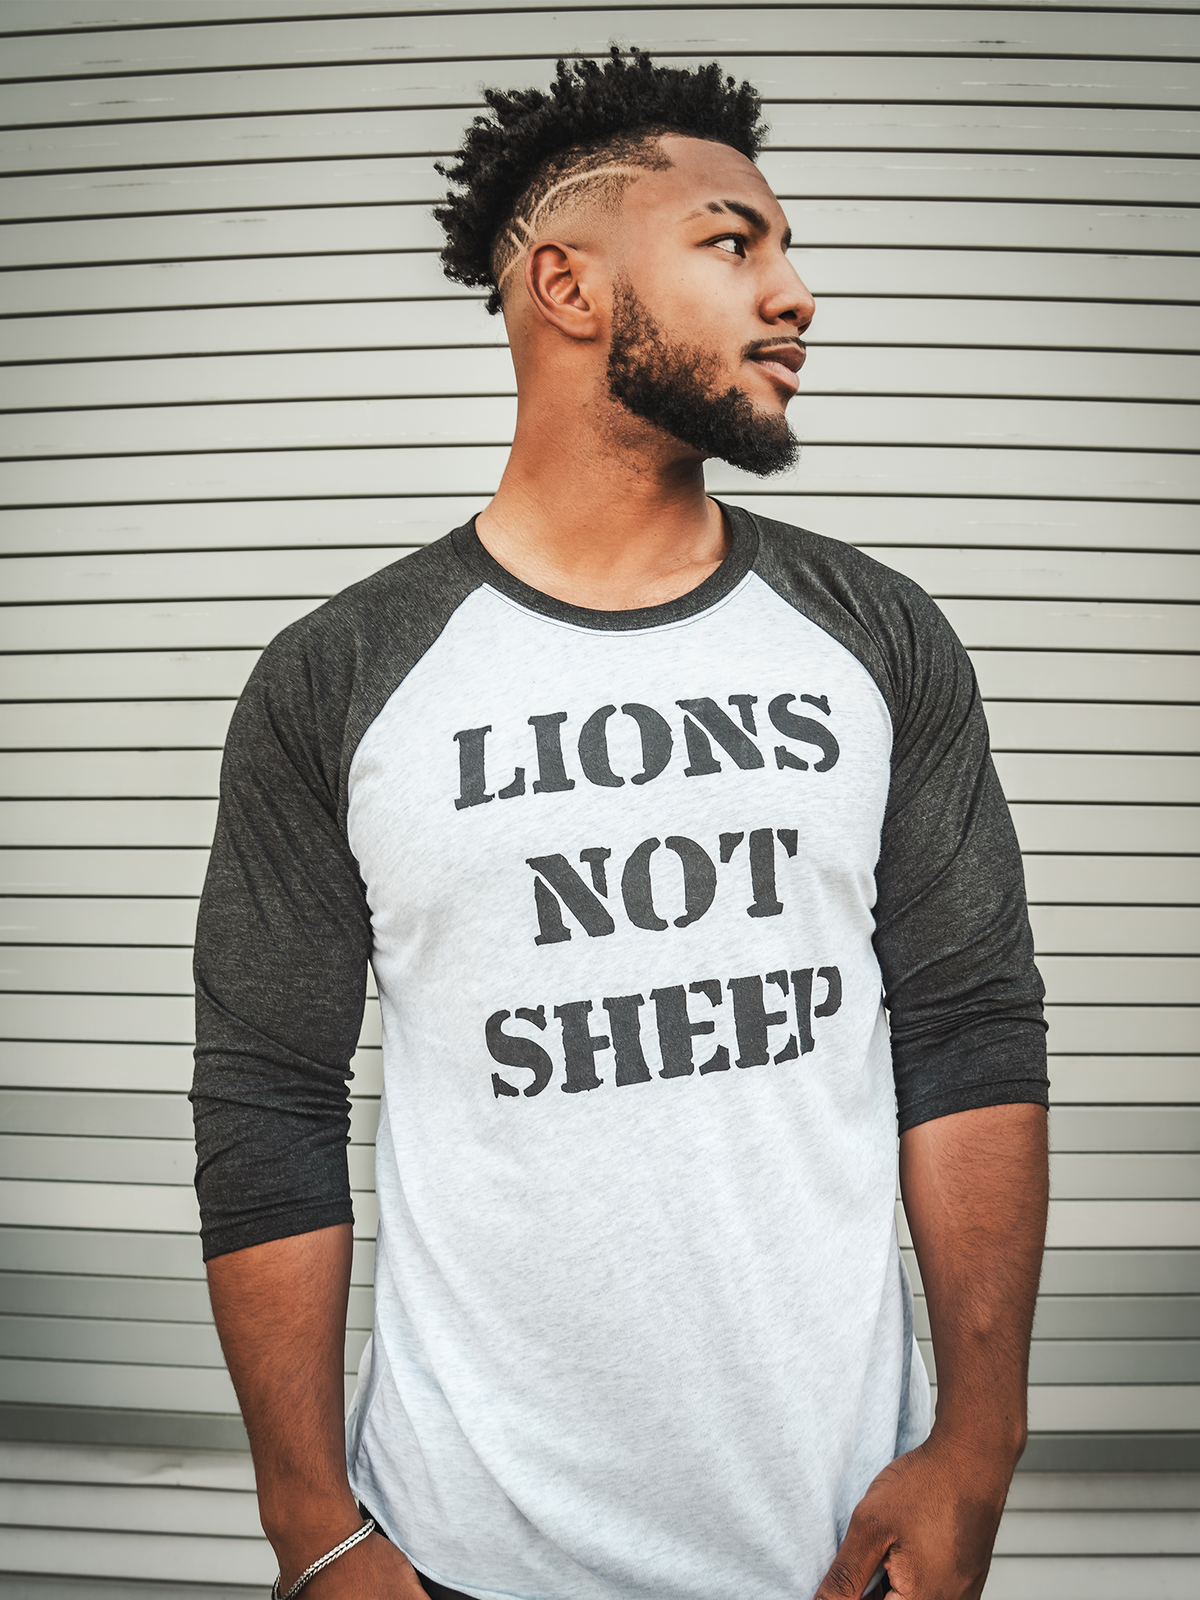 LIONS NOT SHEEP OG Baseball Tee - Lions Not Sheep ®